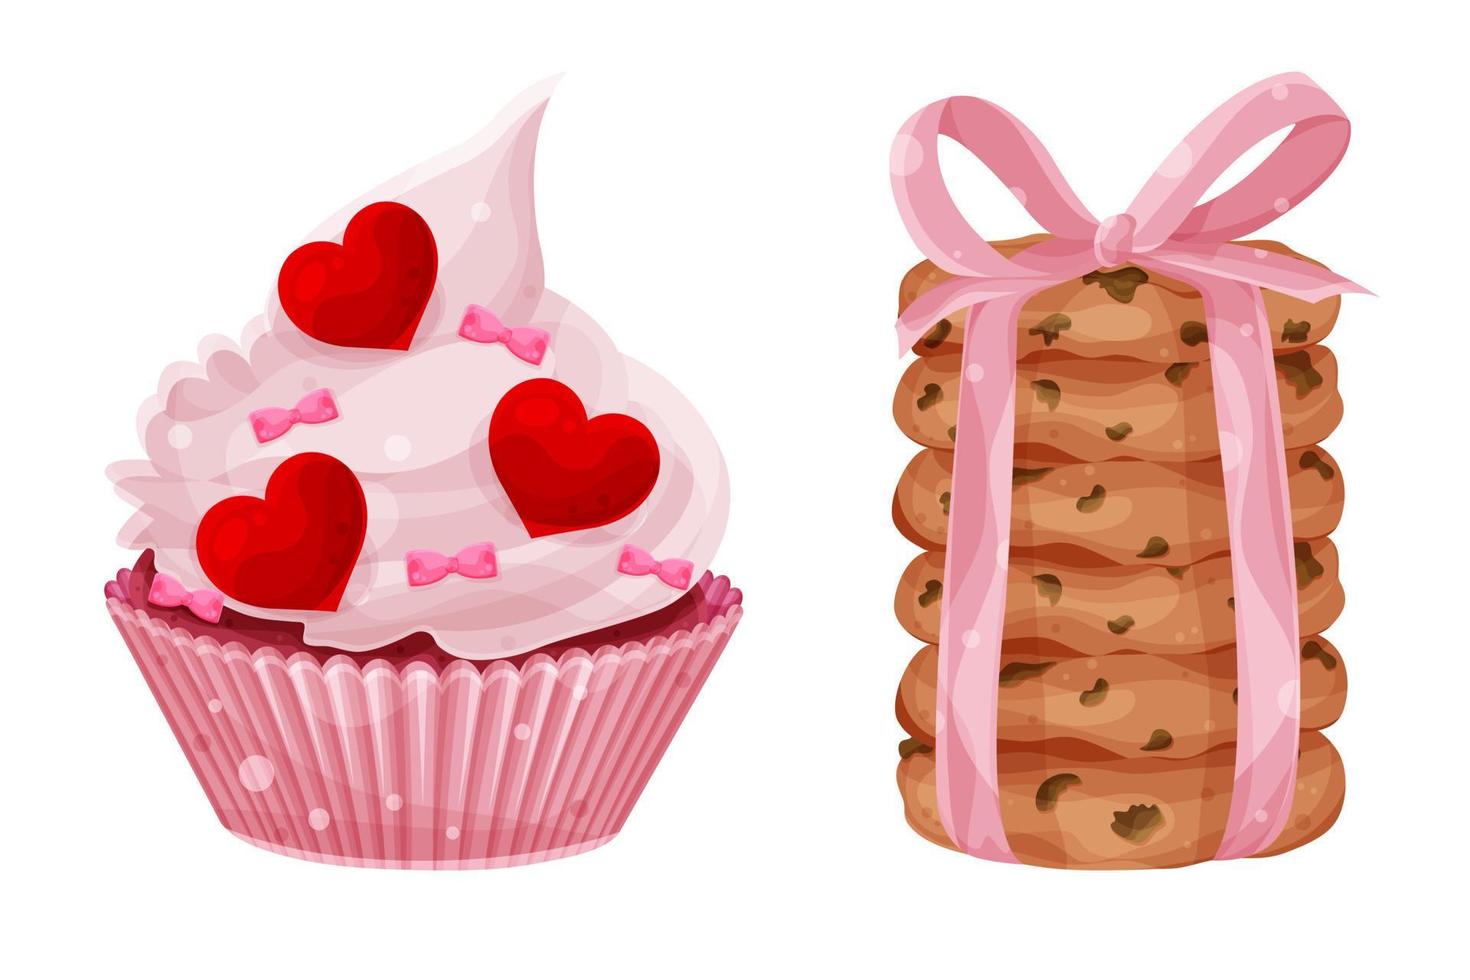 definir vetor brilhante cupcake de dia dos namorados e pilha de biscoitos de aveia, corações e arcos, bolos festivos